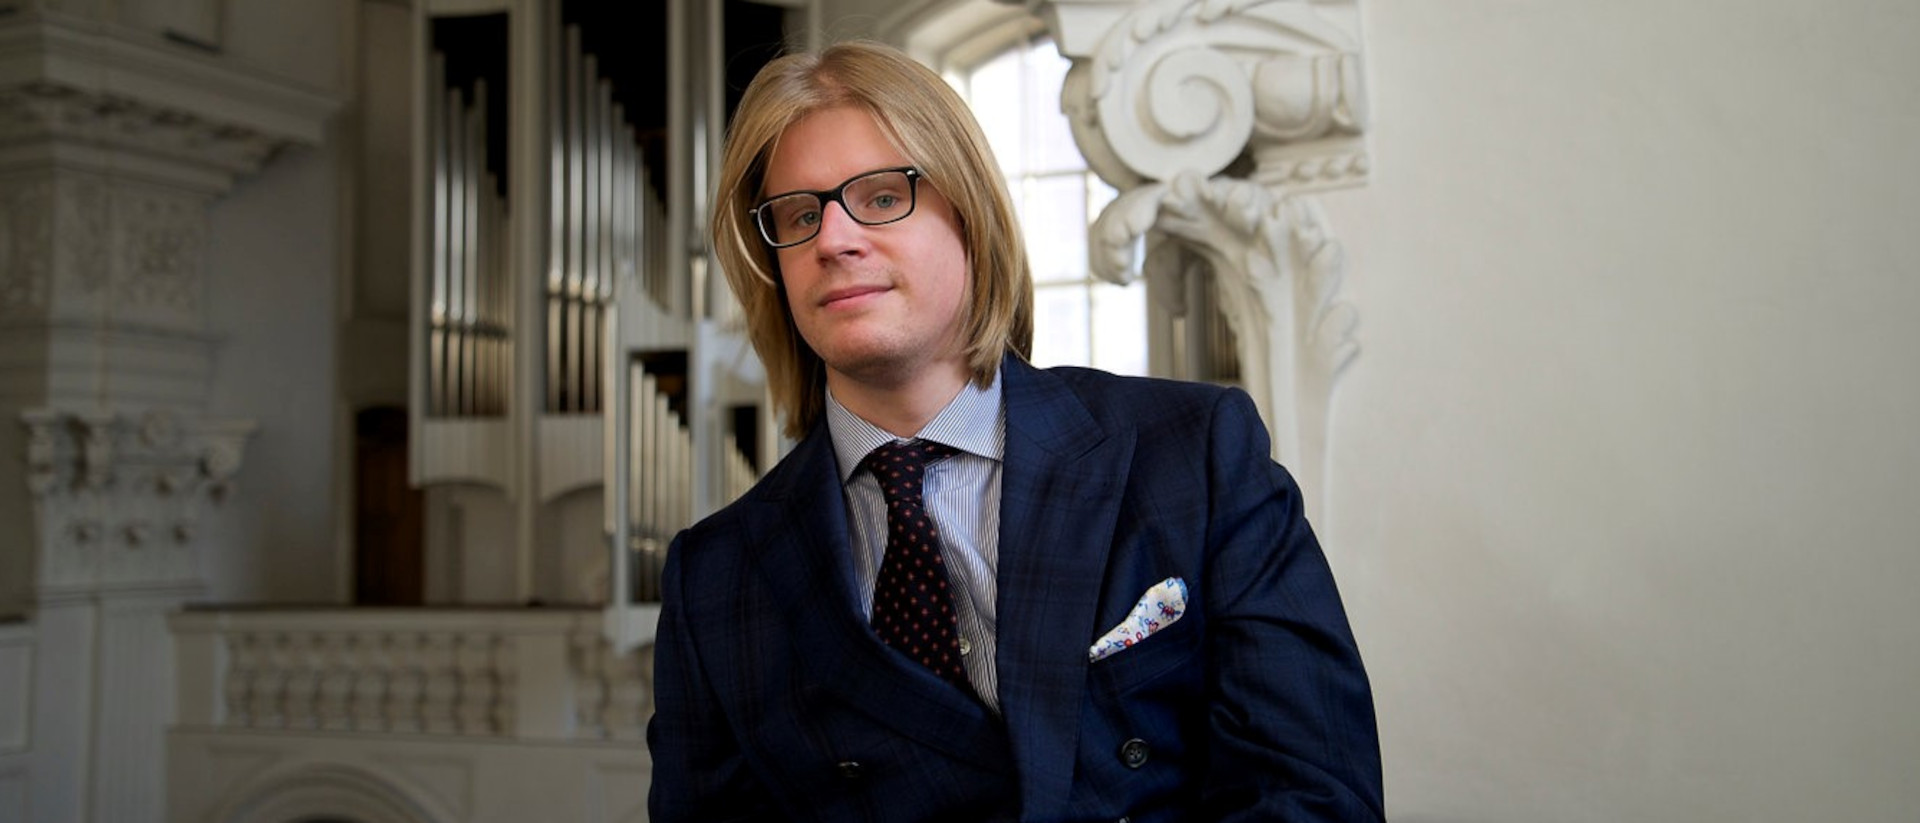 Seit Oktober 2021 ist der 30-jährige Stephane Mottoul Organist in der Hofkirche Luzern.